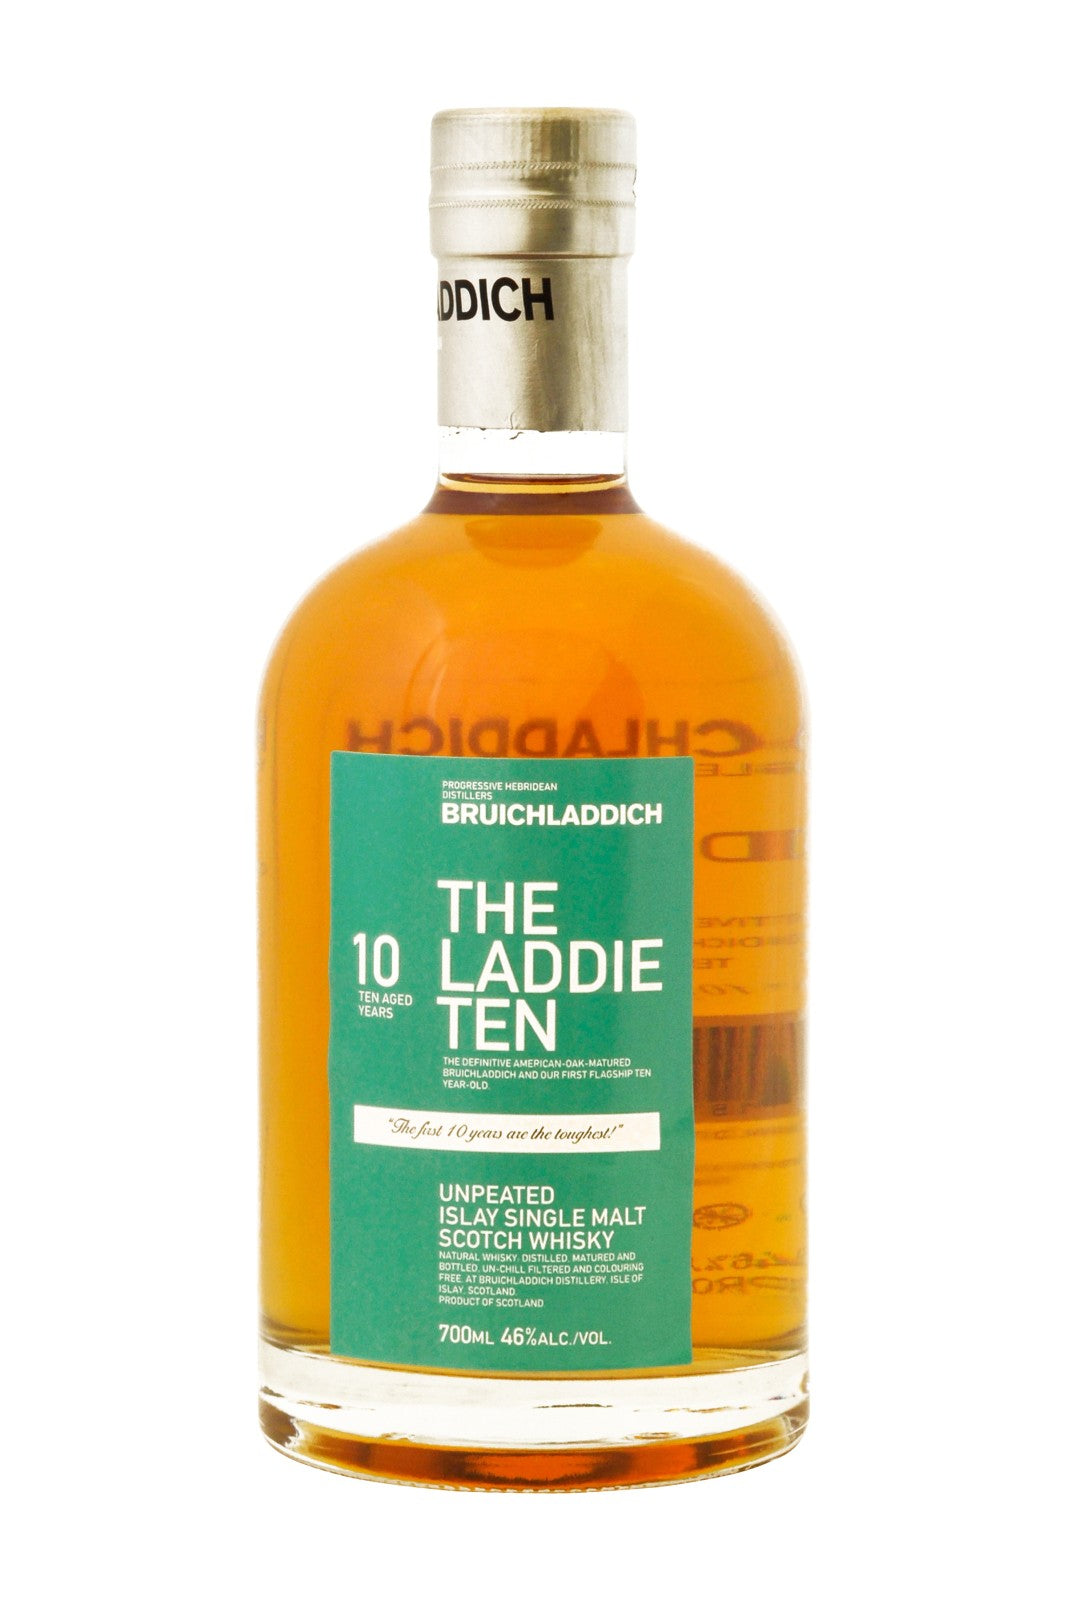 Bruichladdich The Laddie Ten